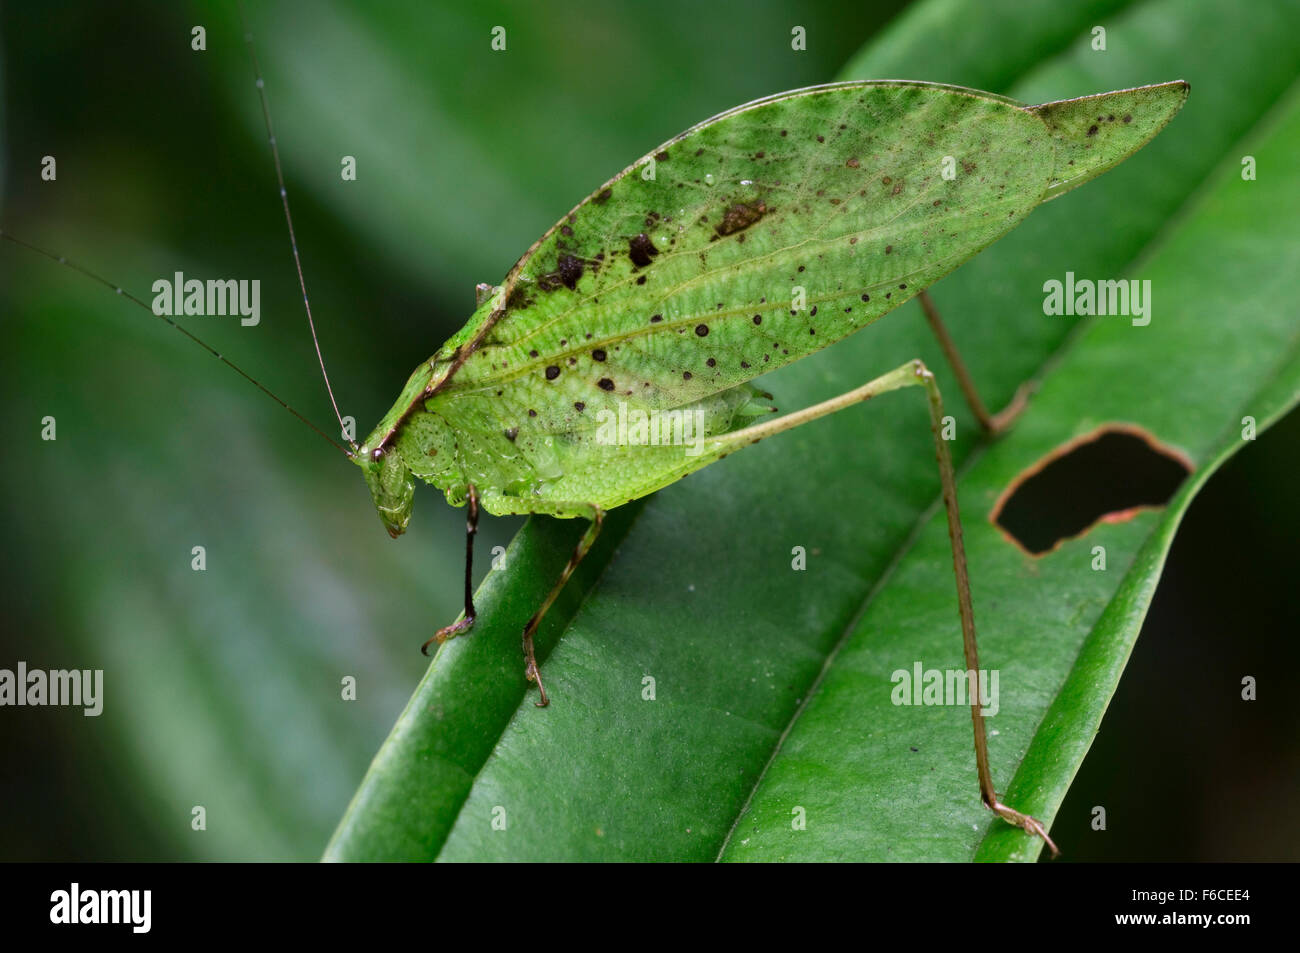 Leaf-mimic katydid (Orophus tesselatus) on leaf, Costa Rica Stock Photo